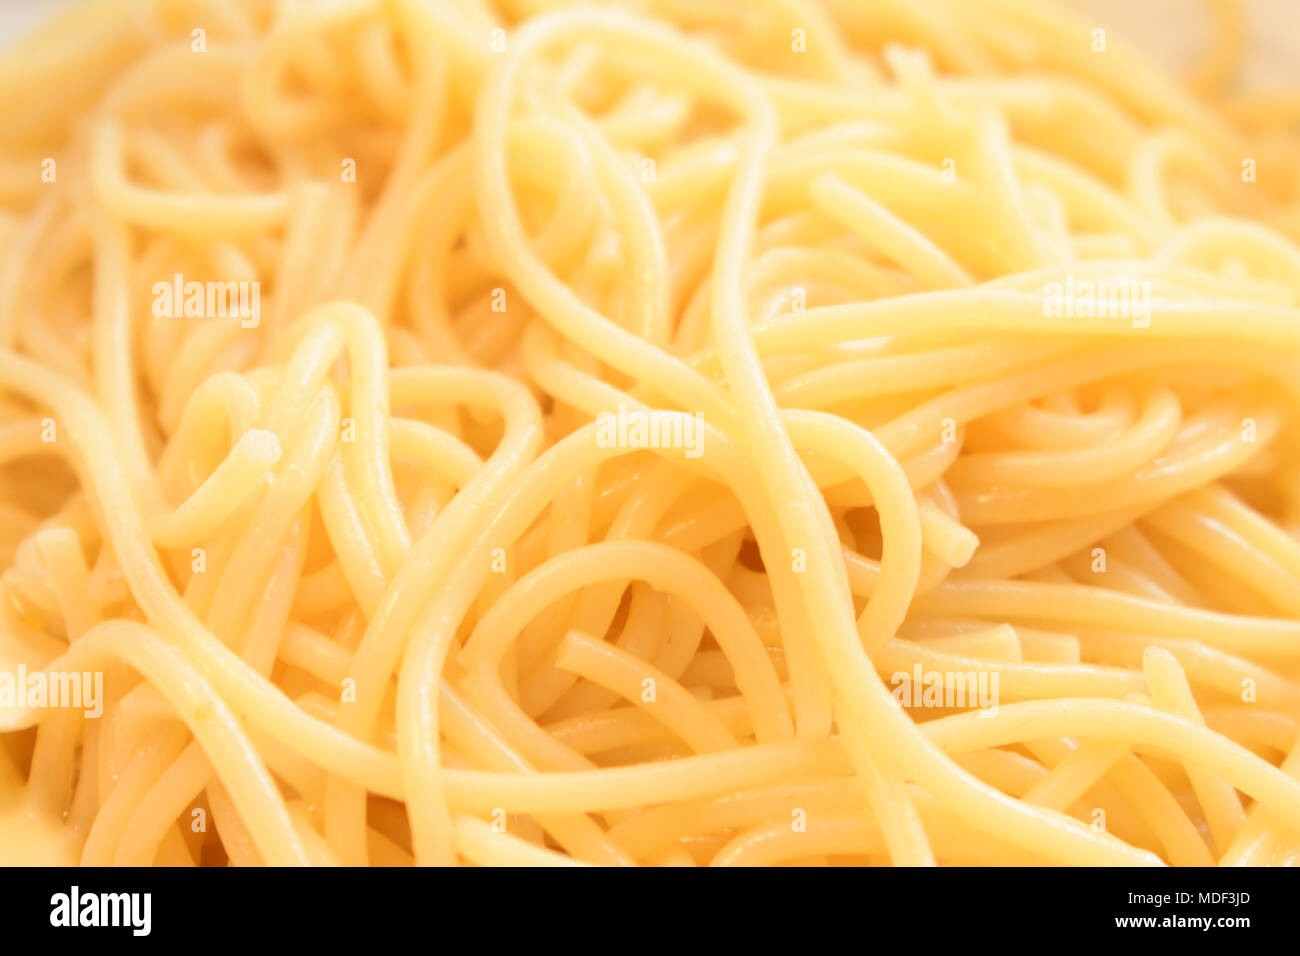 Close-up Capelli Dangelo, oder Angel Hair Pasta. Dies ist eine sehr dünne Vielzahl von Pasta. Stockfoto